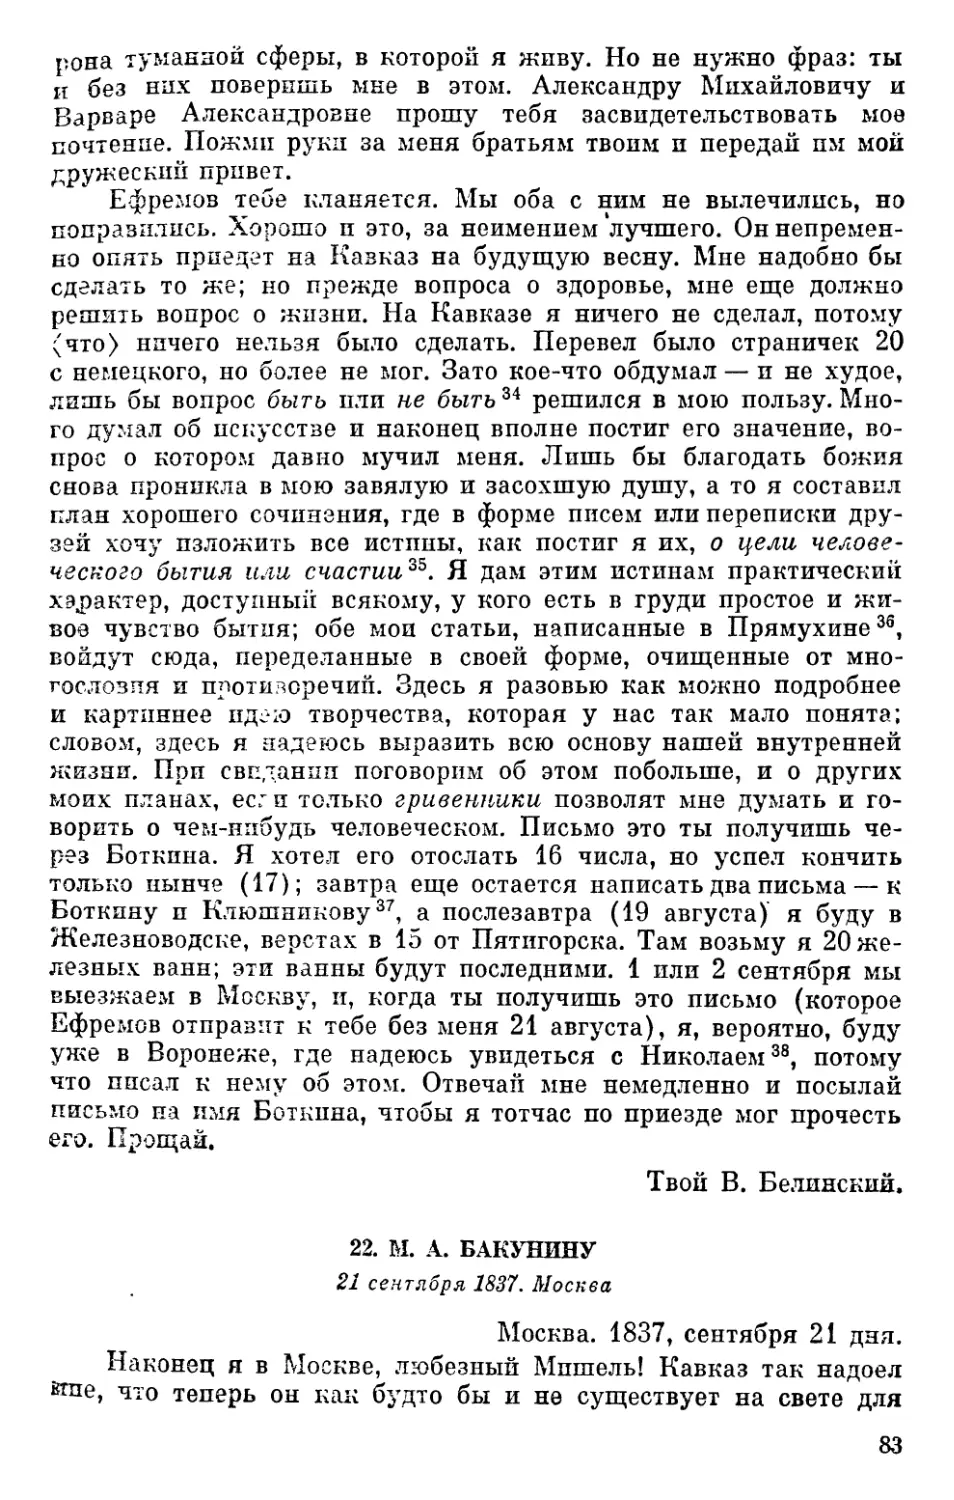 22. М. А. Бакунину. 21 сентября 1837